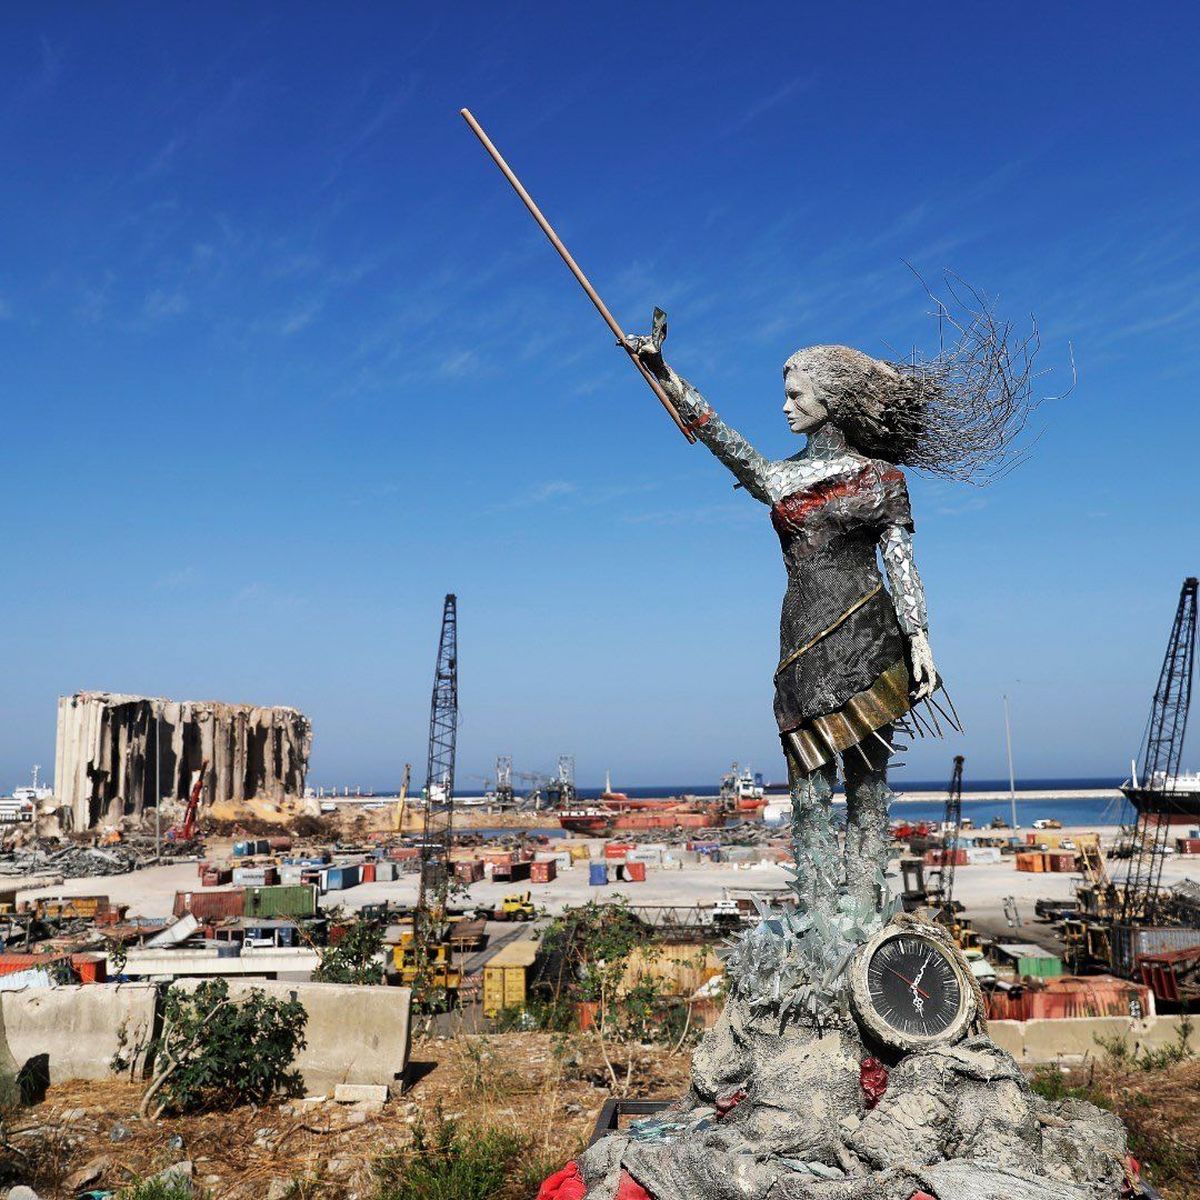 مجسمه یادبود با استفاده از خرده قطعات ناشی از انفجار بیروت/ ویدئو